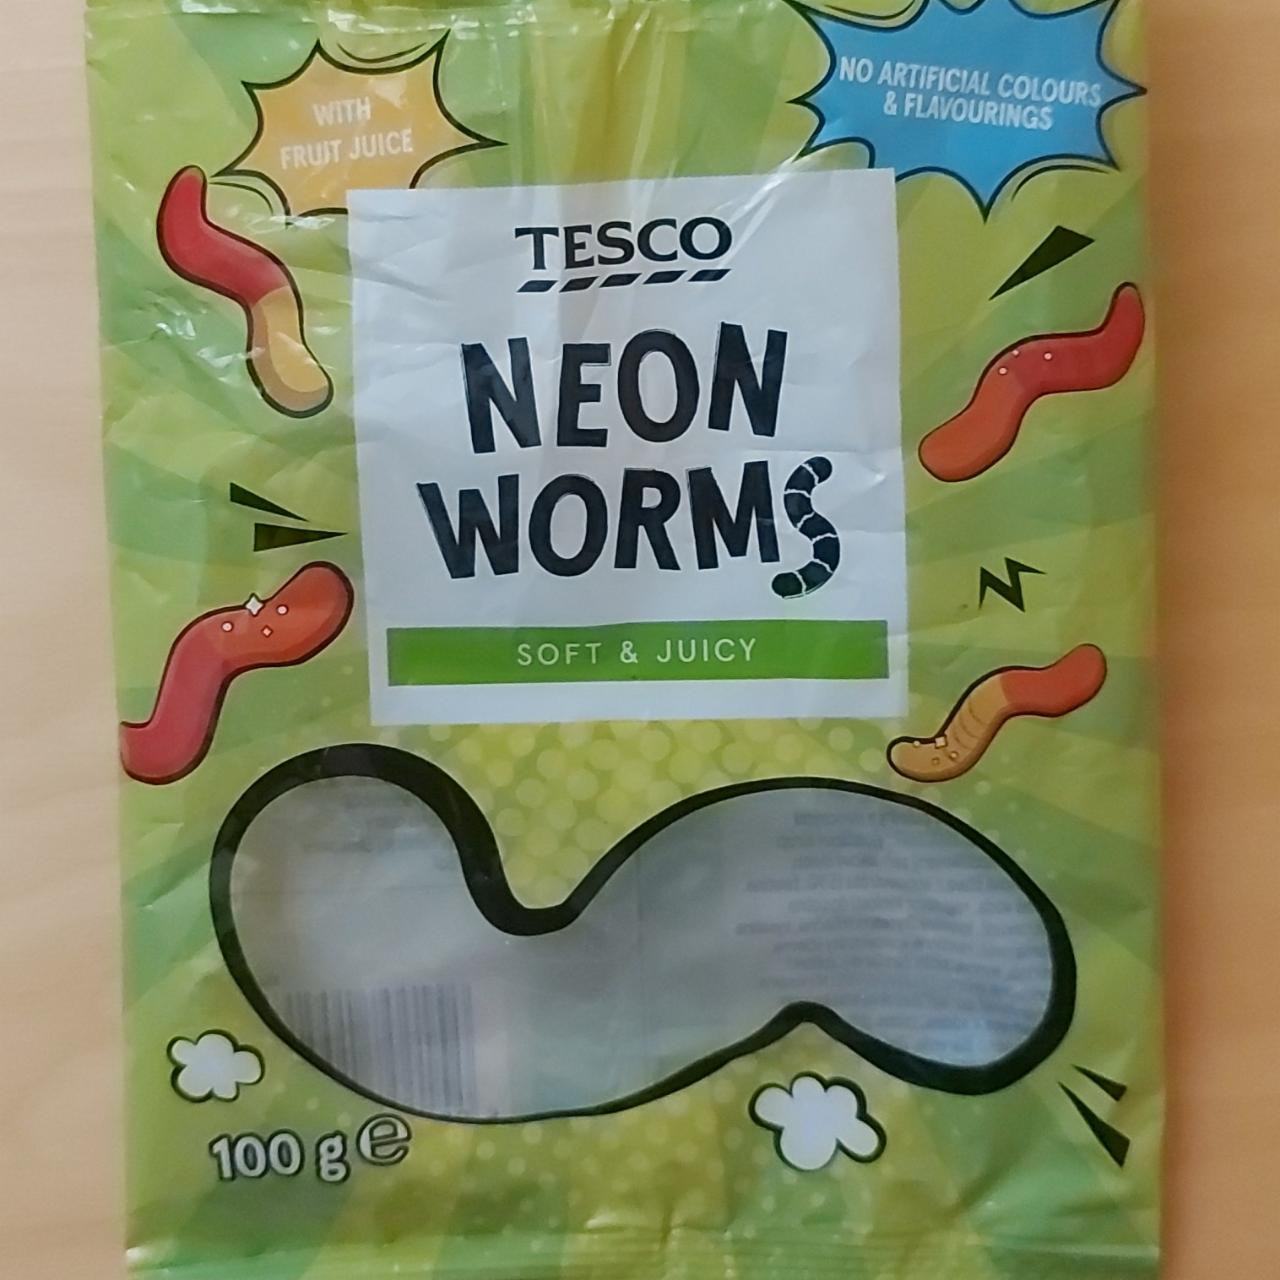 Fotografie - Neon Worms soft & juicy Tesco